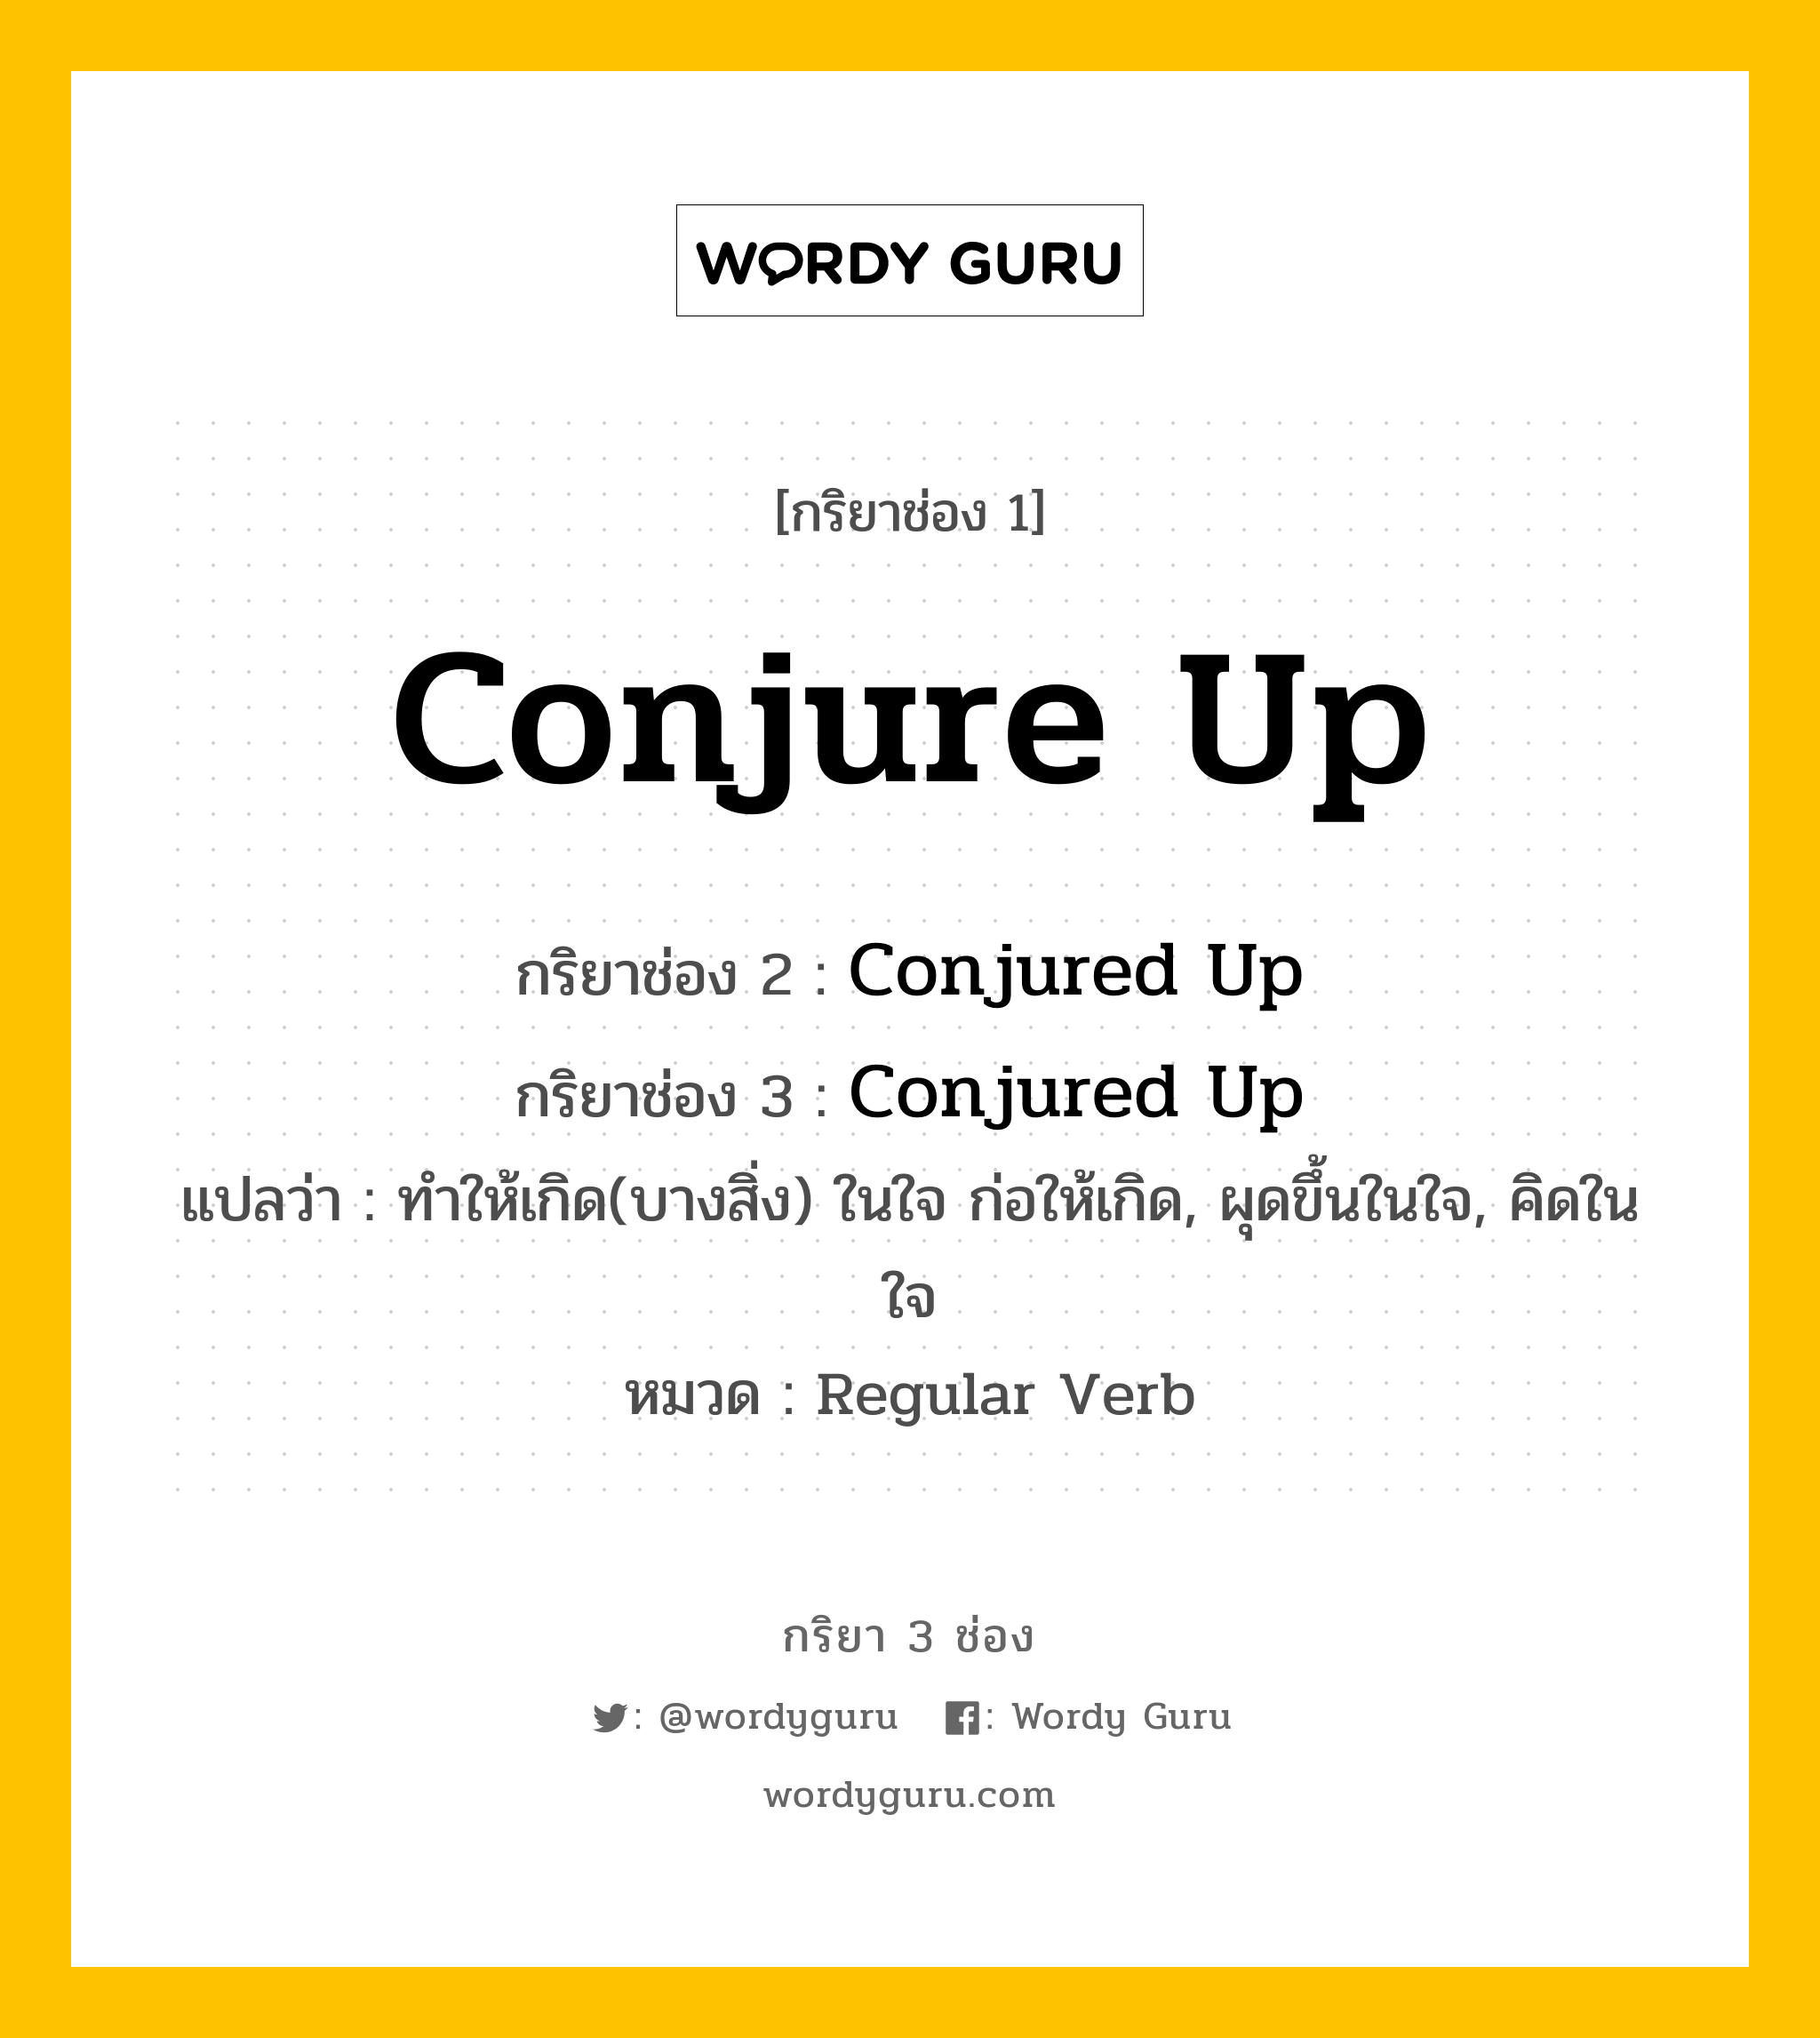 กริยา 3 ช่อง ของ Conjure Up คืออะไร? มาดูคำอ่าน คำแปลกันเลย, กริยาช่อง 1 Conjure Up กริยาช่อง 2 Conjured Up กริยาช่อง 3 Conjured Up แปลว่า ทำให้เกิด(บางสิ่ง) ในใจ ก่อให้เกิด, ผุดขึ้นในใจ, คิดในใจ หมวด Regular Verb หมวด Regular Verb